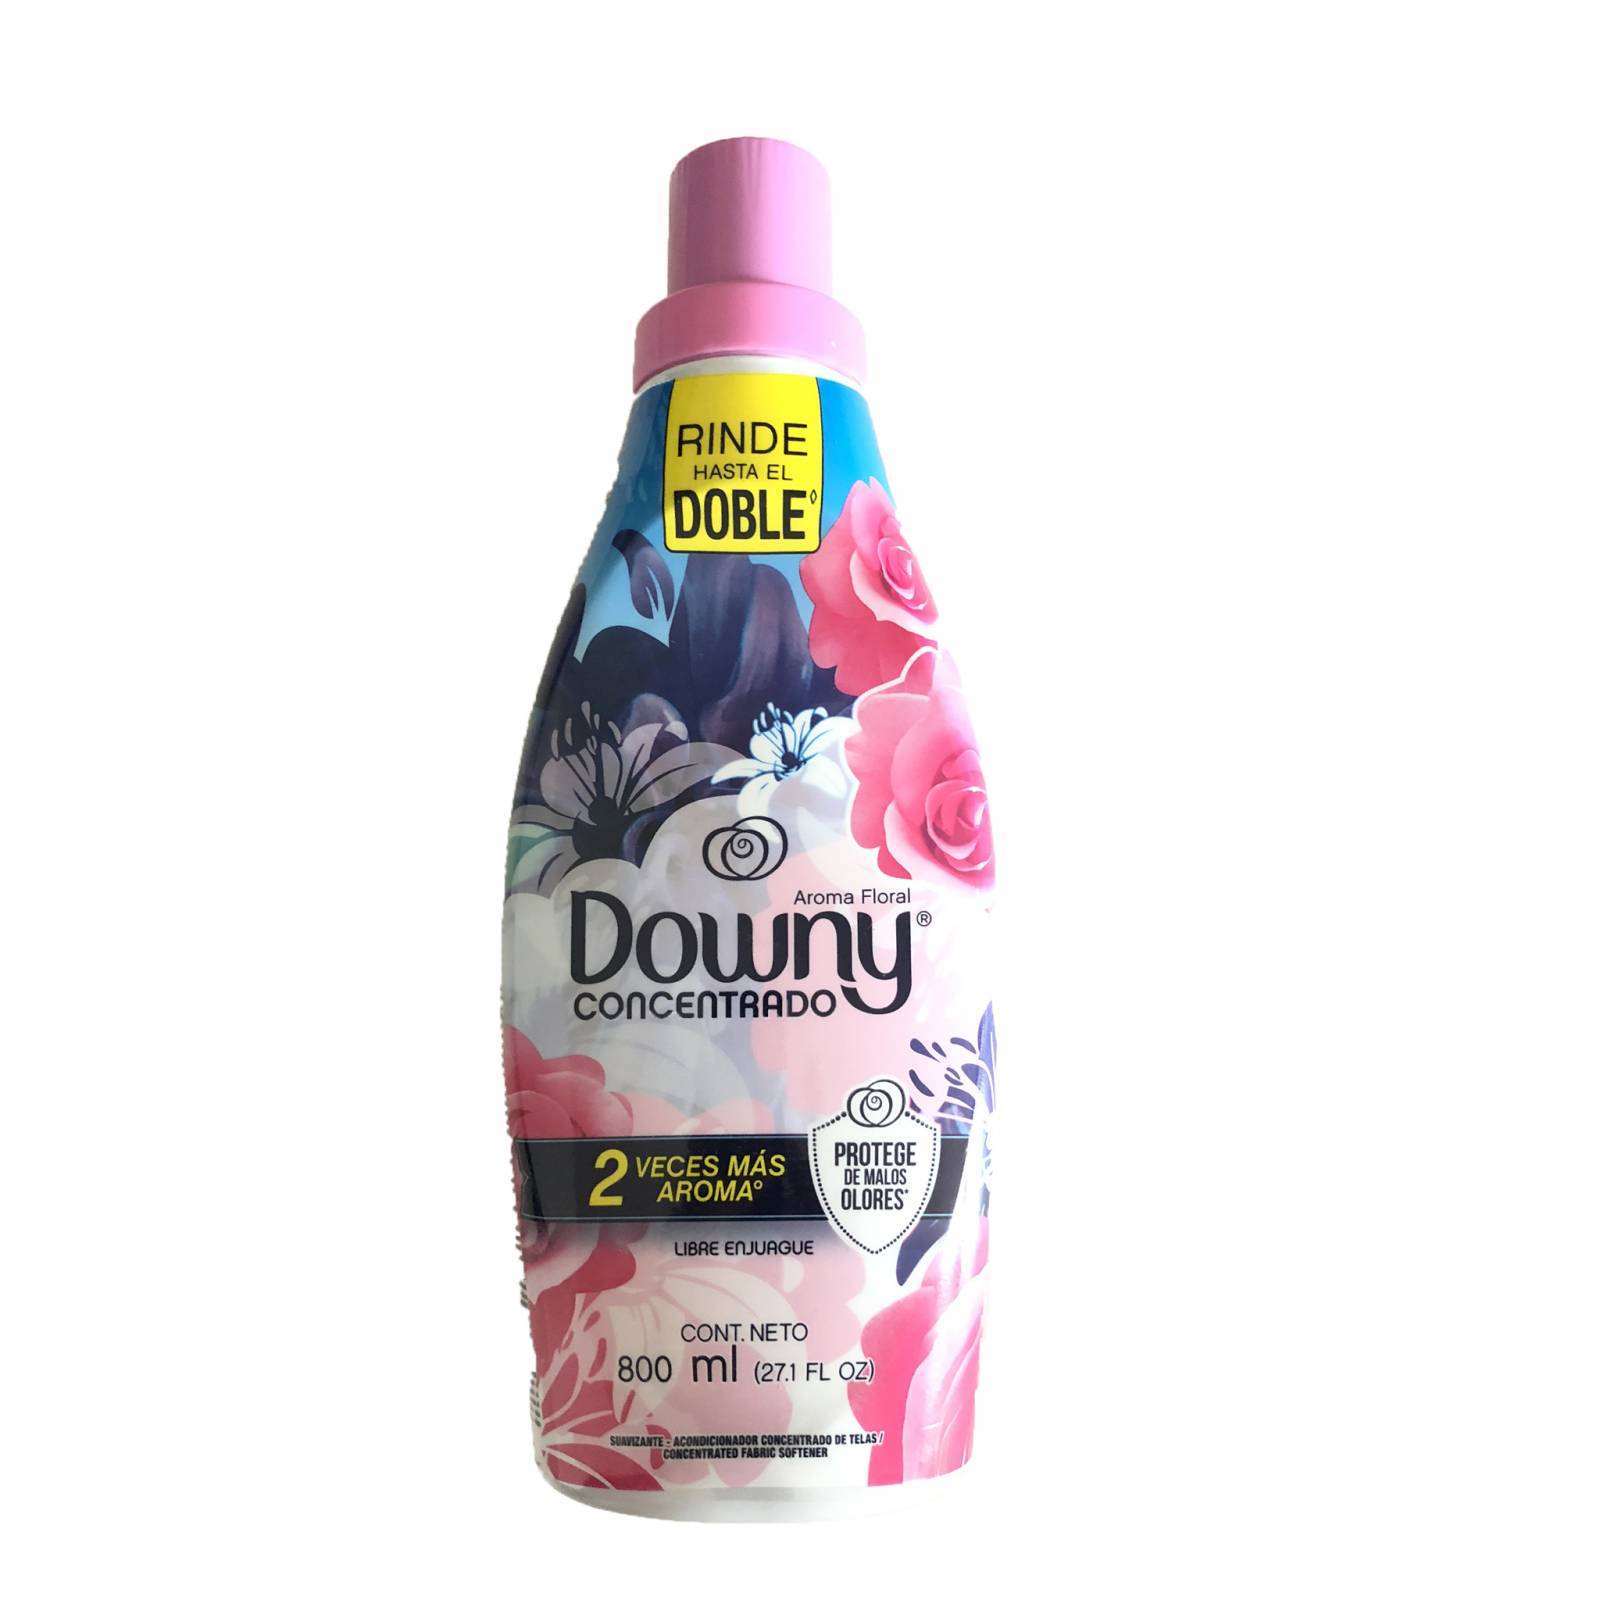 Detergente DOWNY Concentrado, aroma: Floral.  800 ml. Libre enjuague.